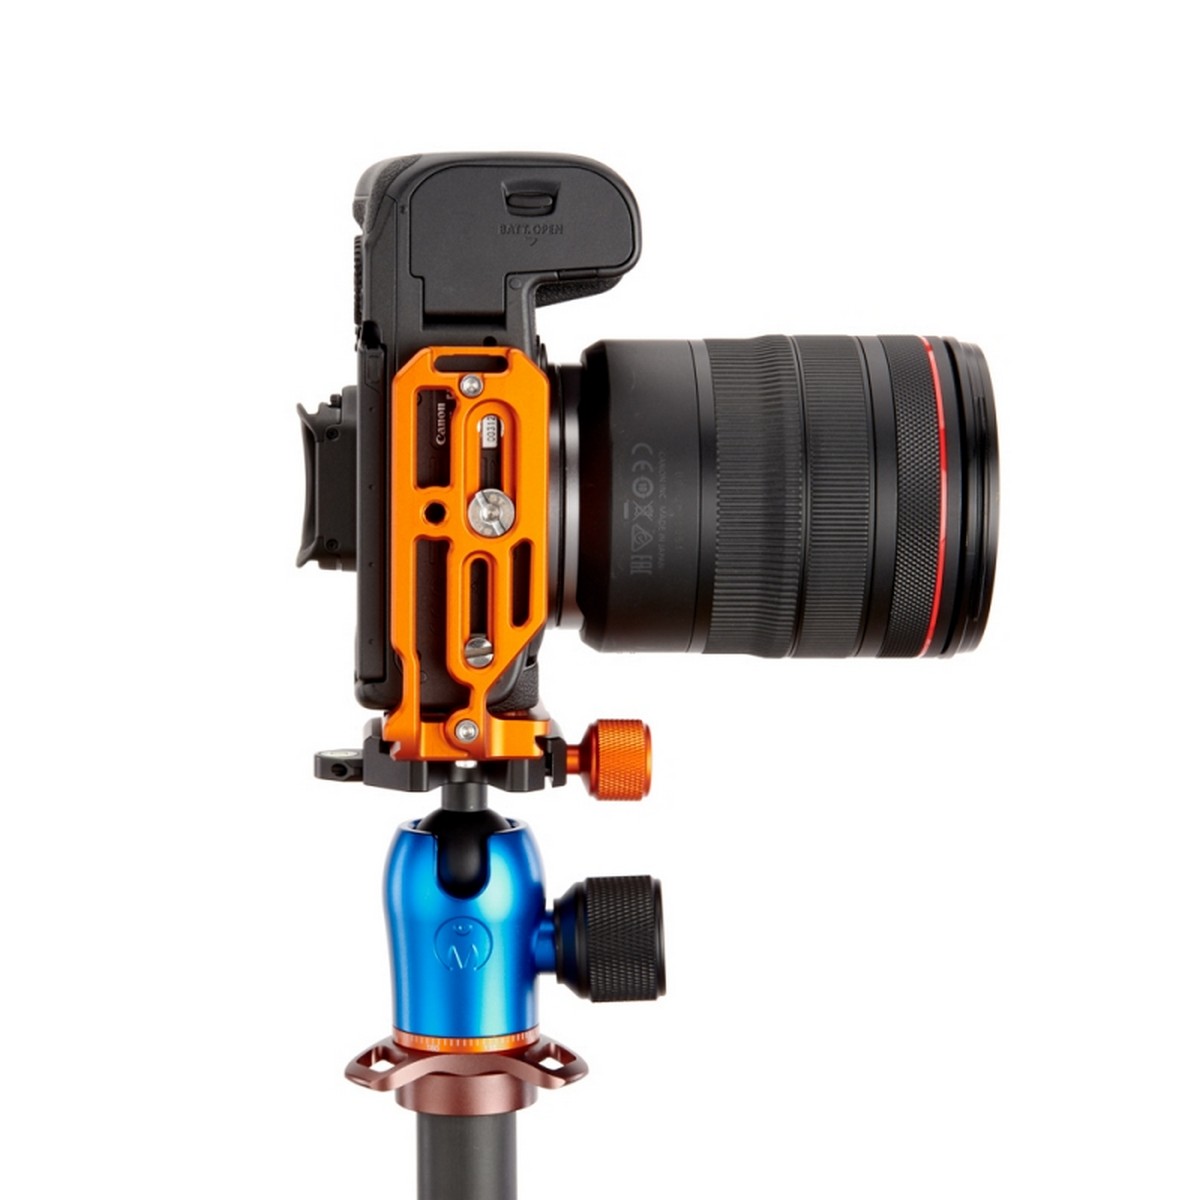 3 Legged Thing Roxie, L-Winkel für Canon EOS R5 und R6, kompatibel mit Arca-Swiss - Kupferfarben